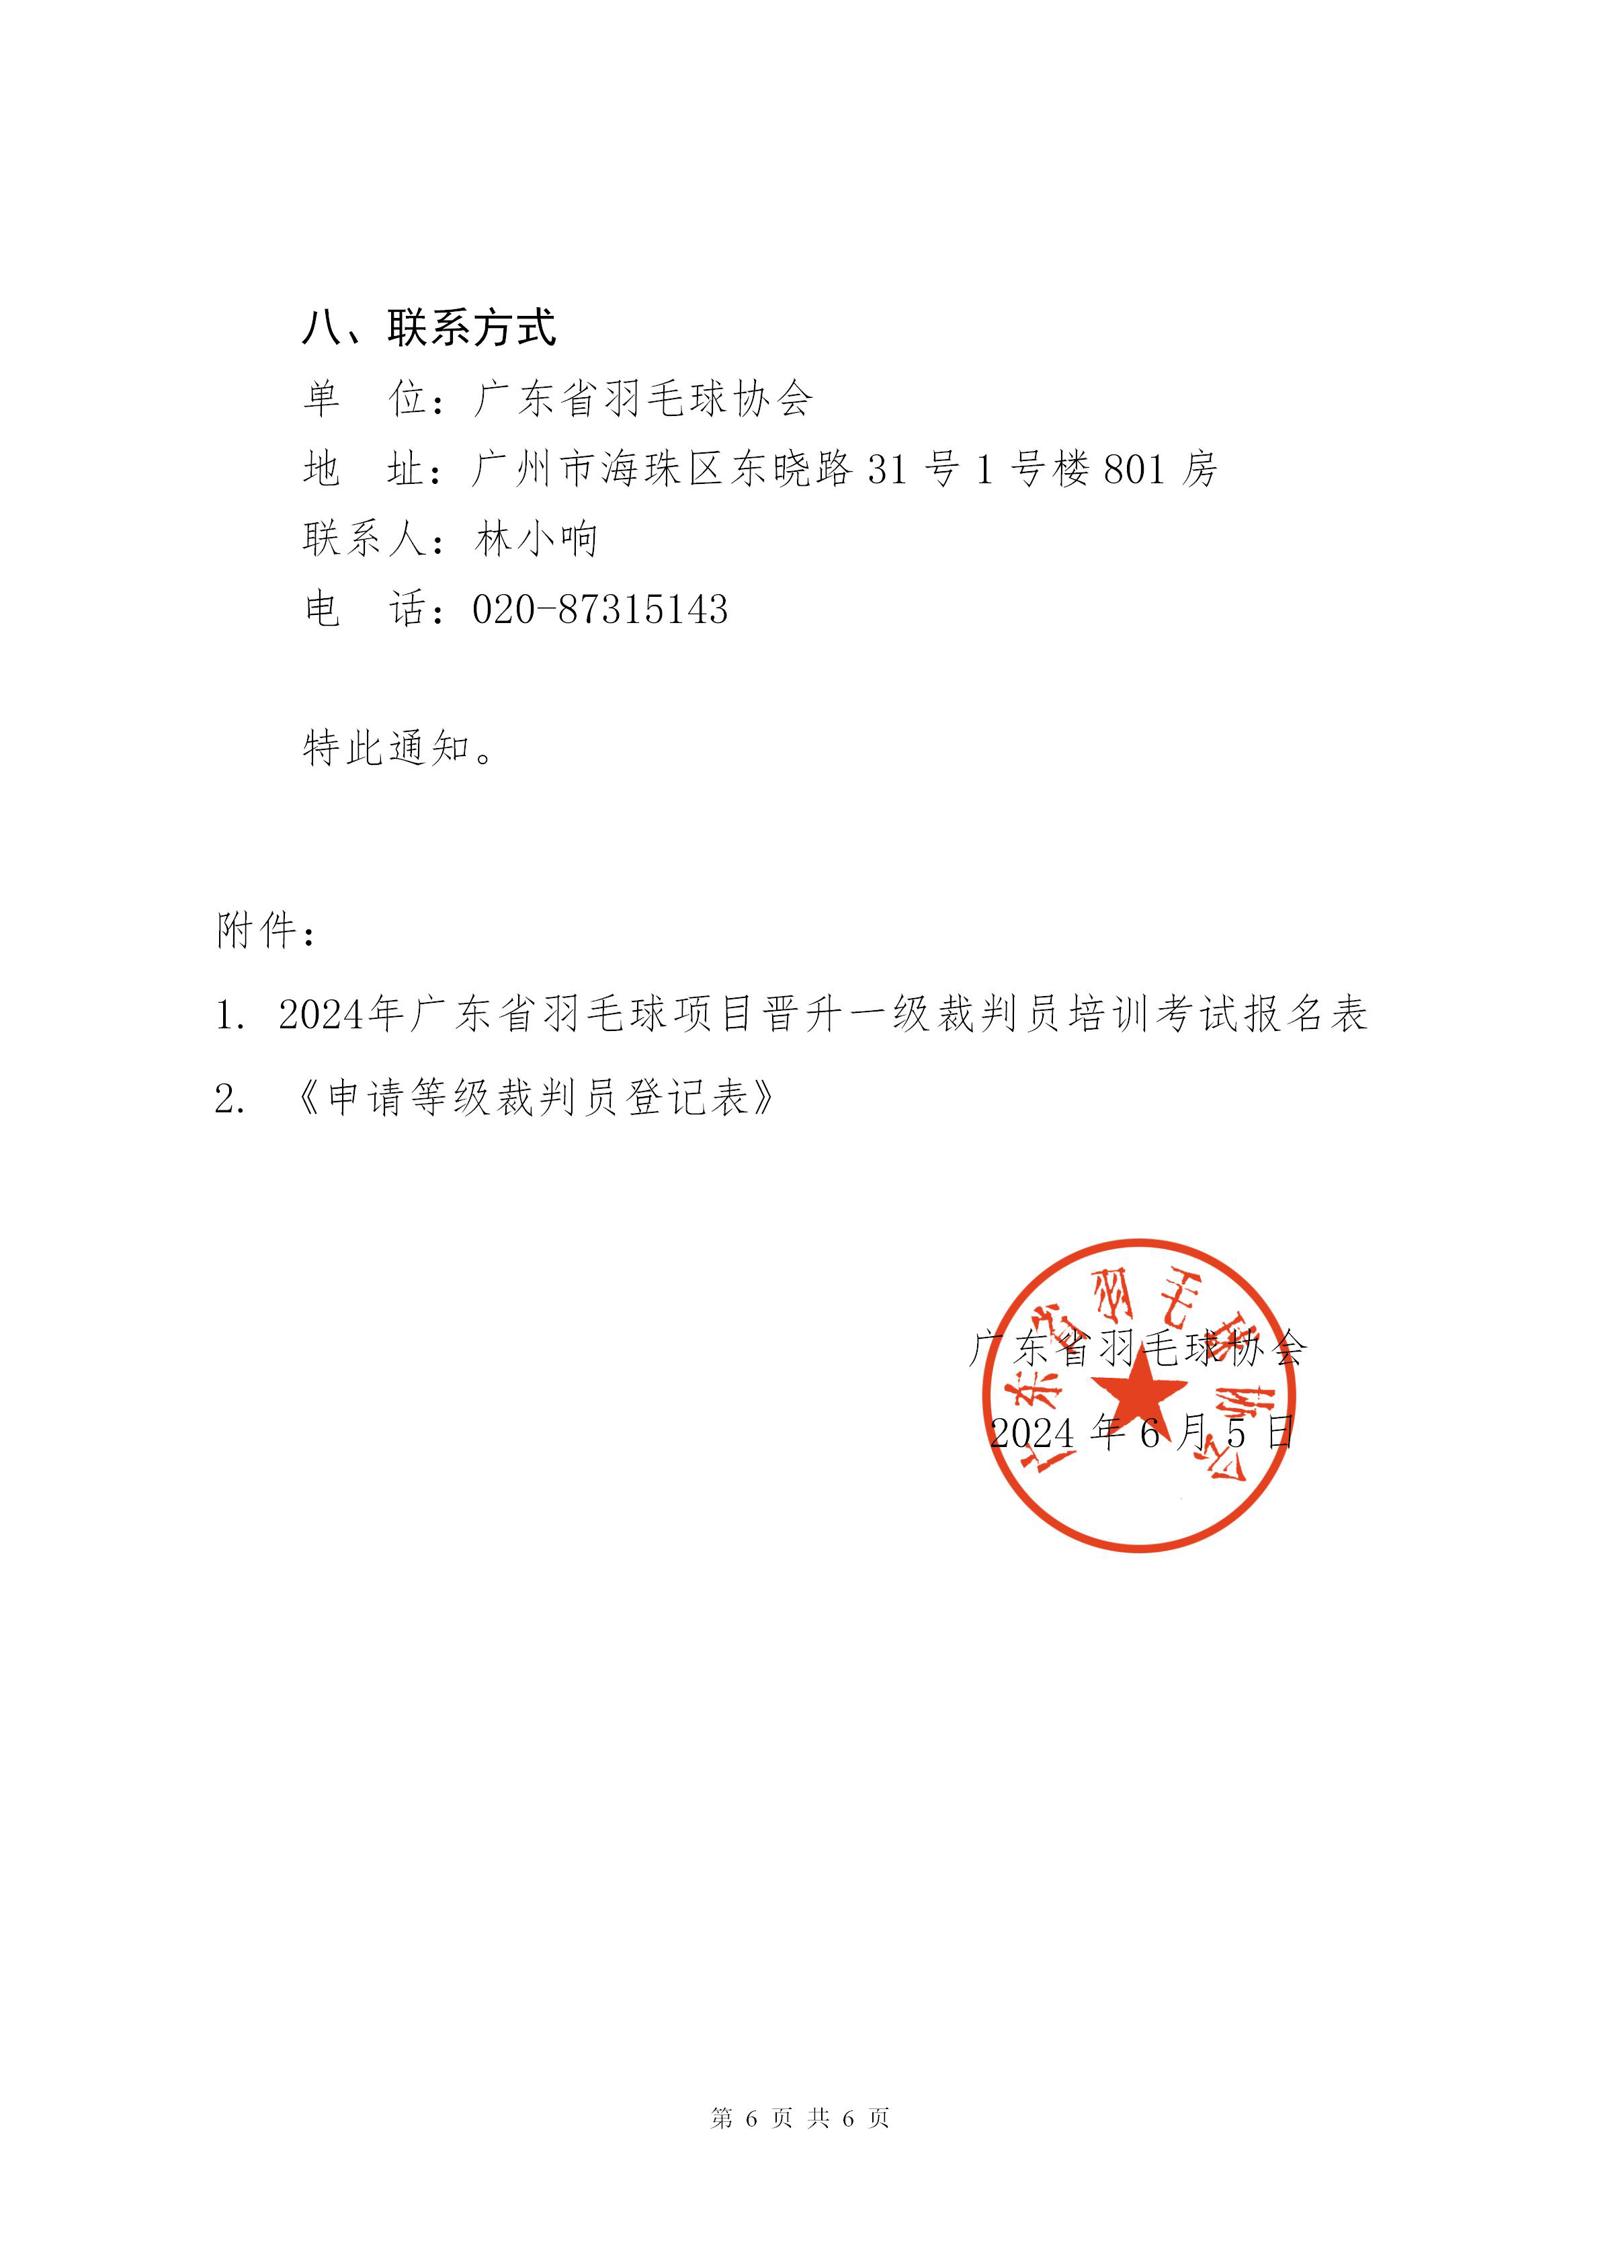 关于2024年广东省羽毛球项目晋升一级裁判员的通知_06